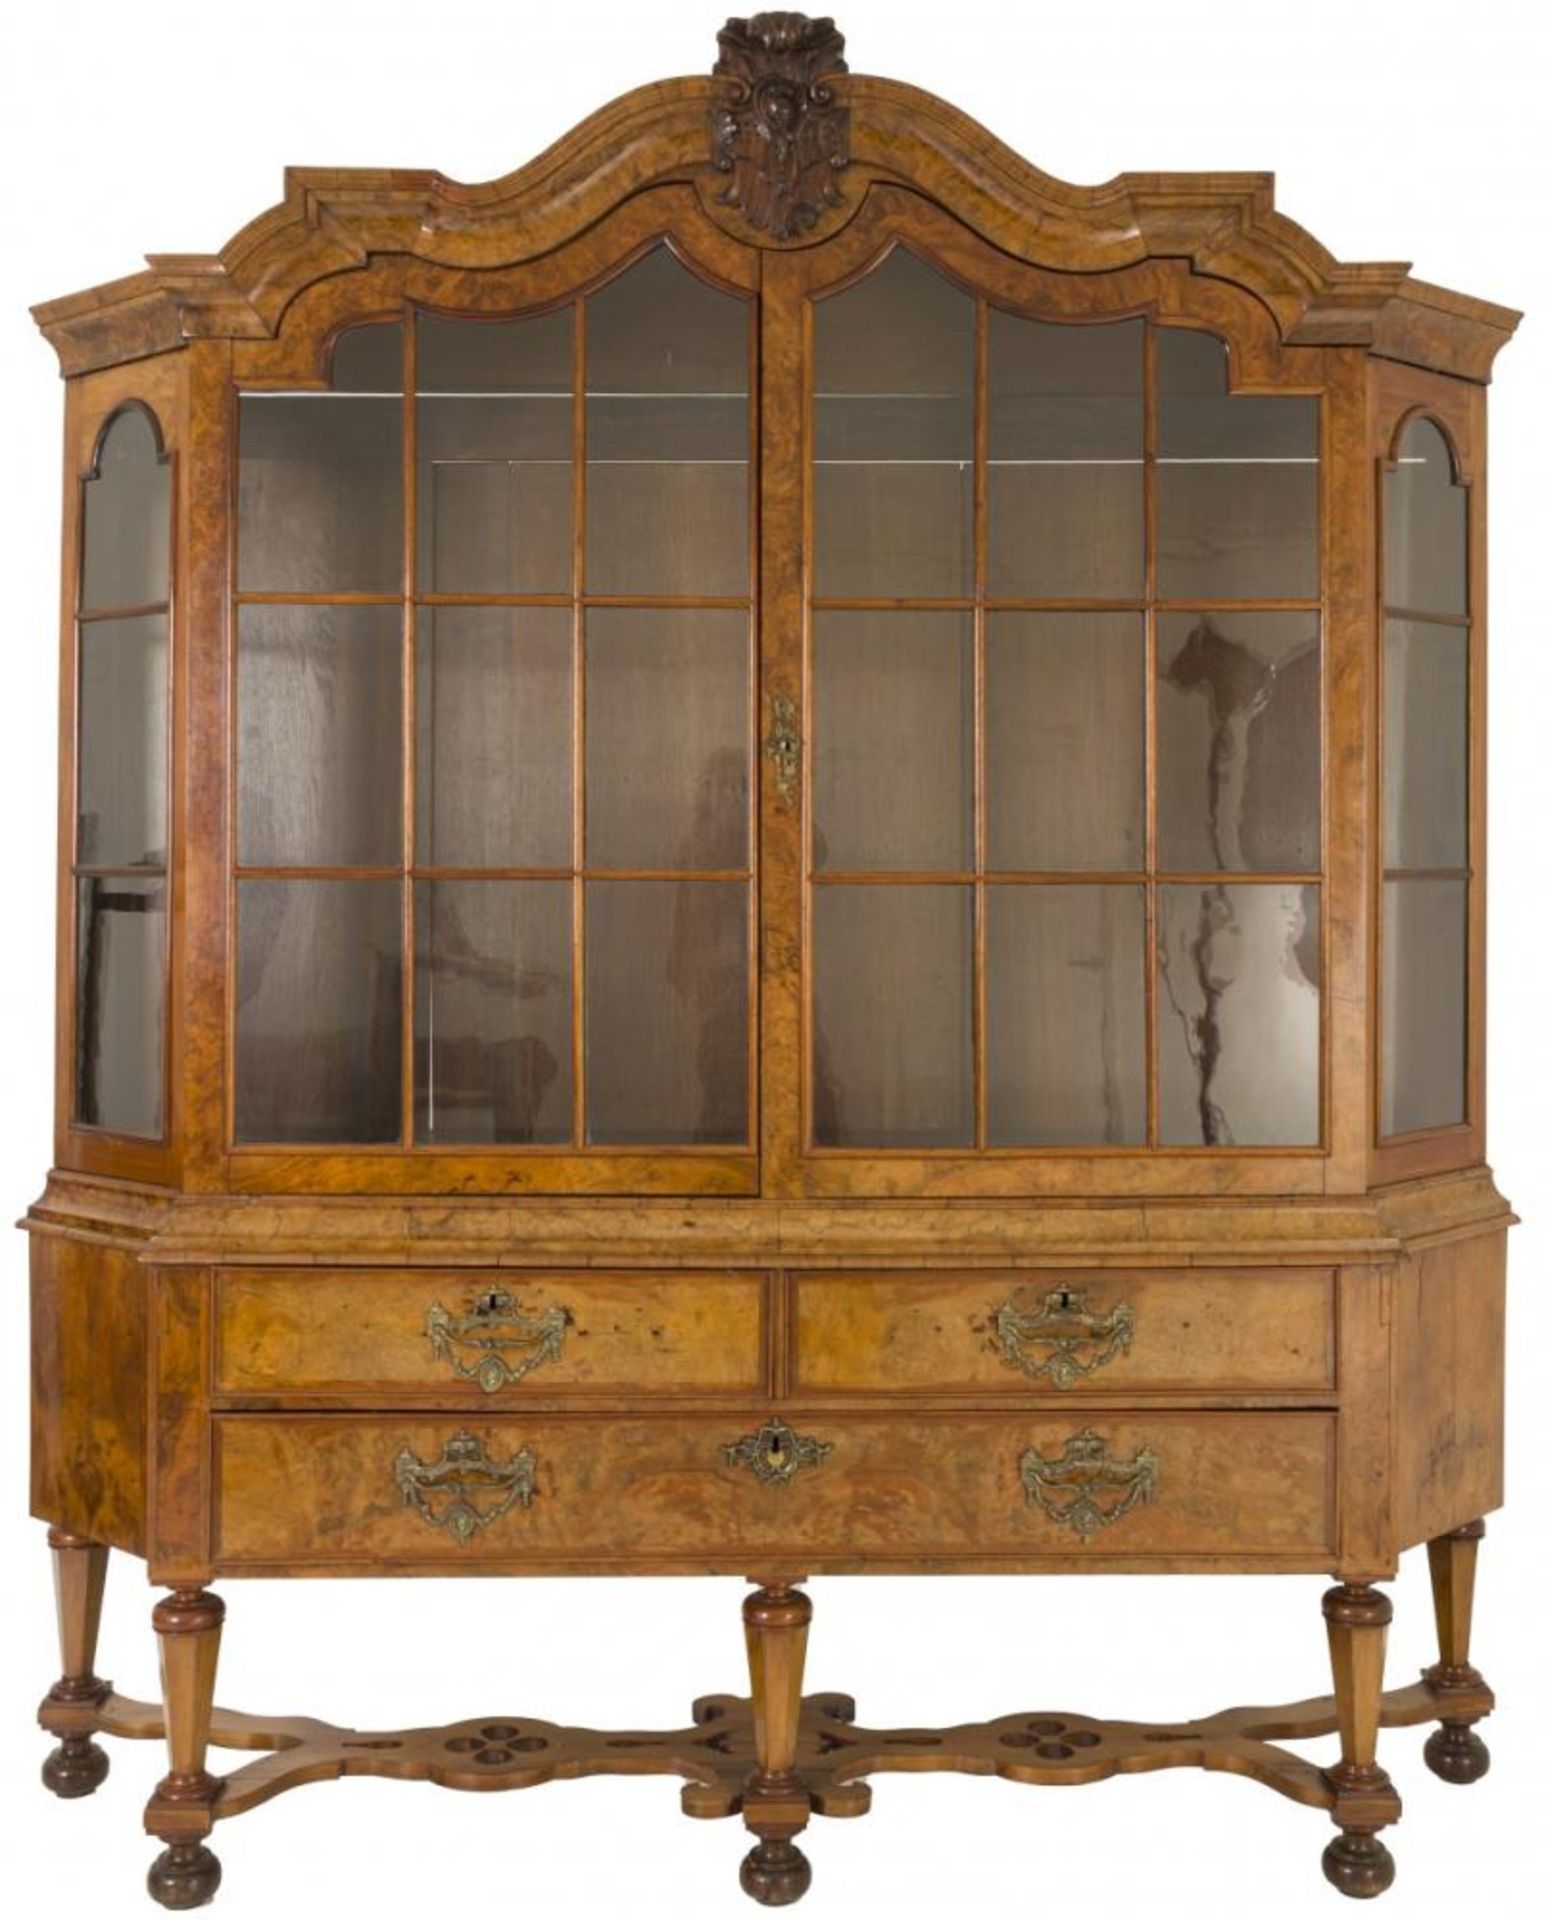 A Dutch display cabinet, ca. 1700.